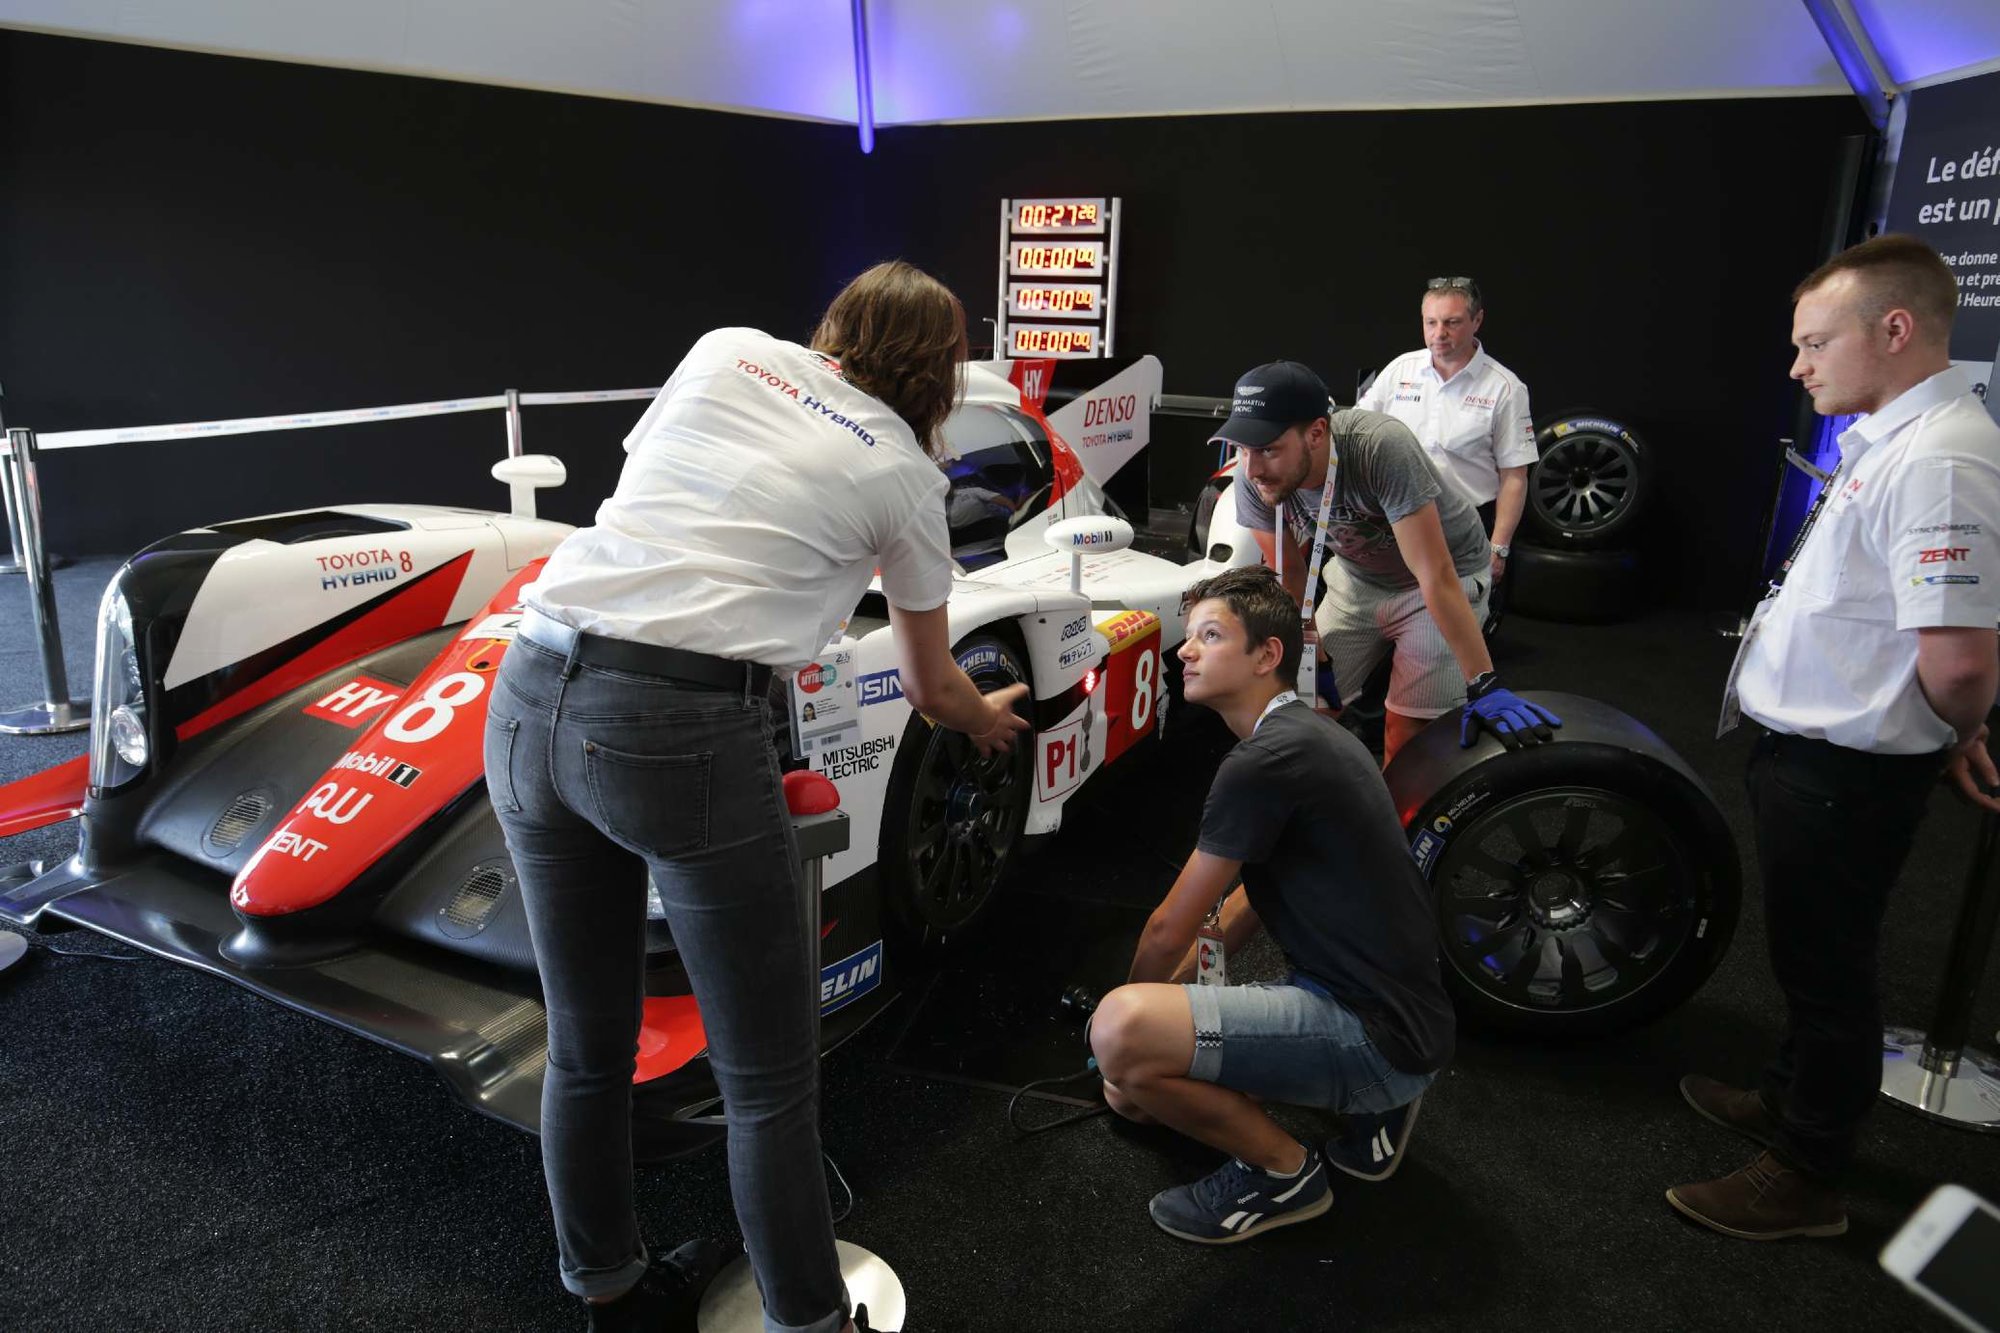 Instalace expozice ve stánku Toyota Gazoo racing v Paddocku Le Mans 2017